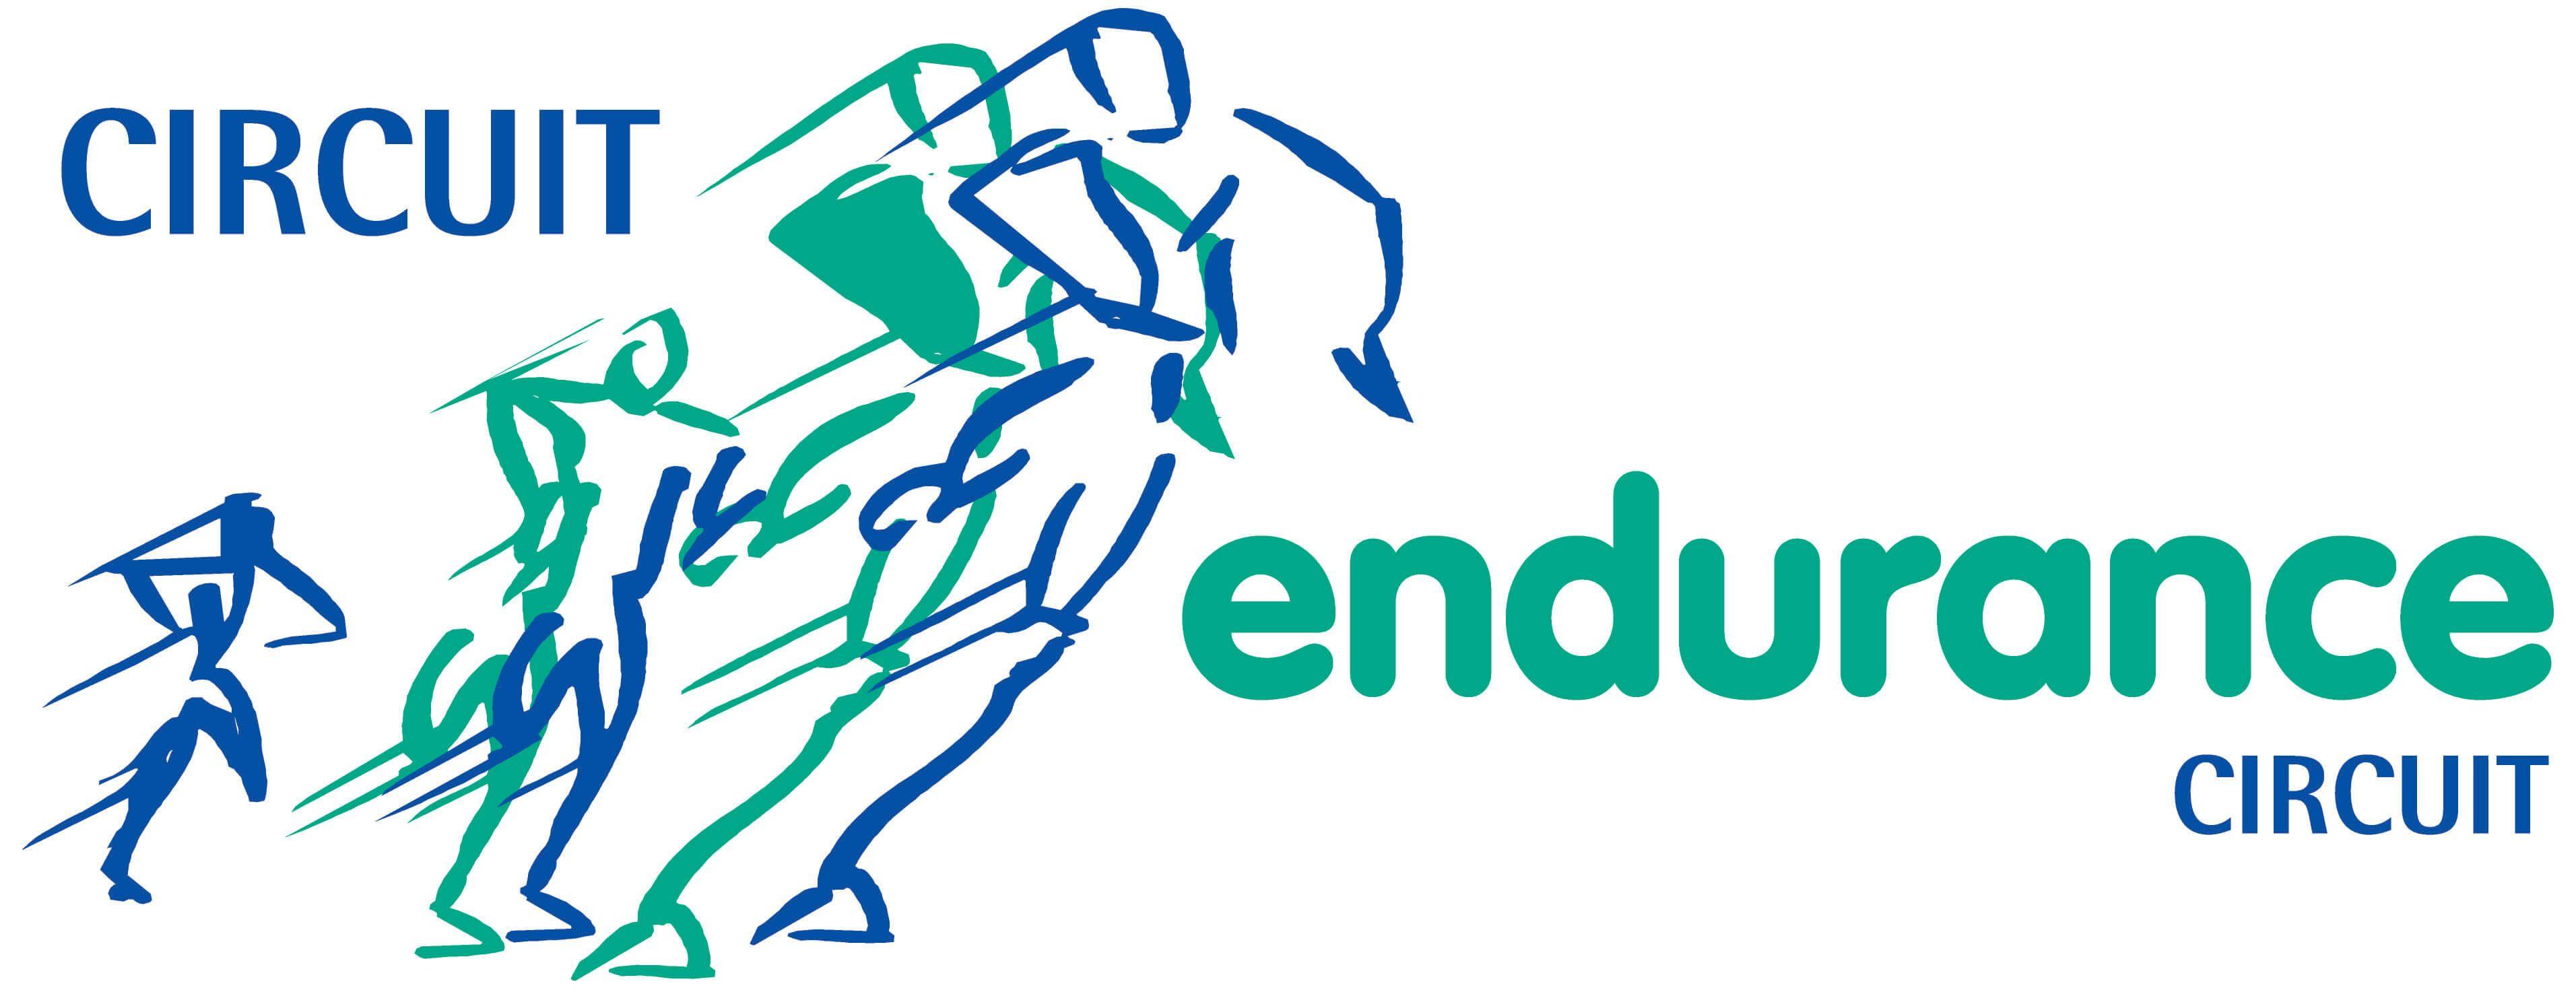 Endurance Logo - Circuit Endurance Logo